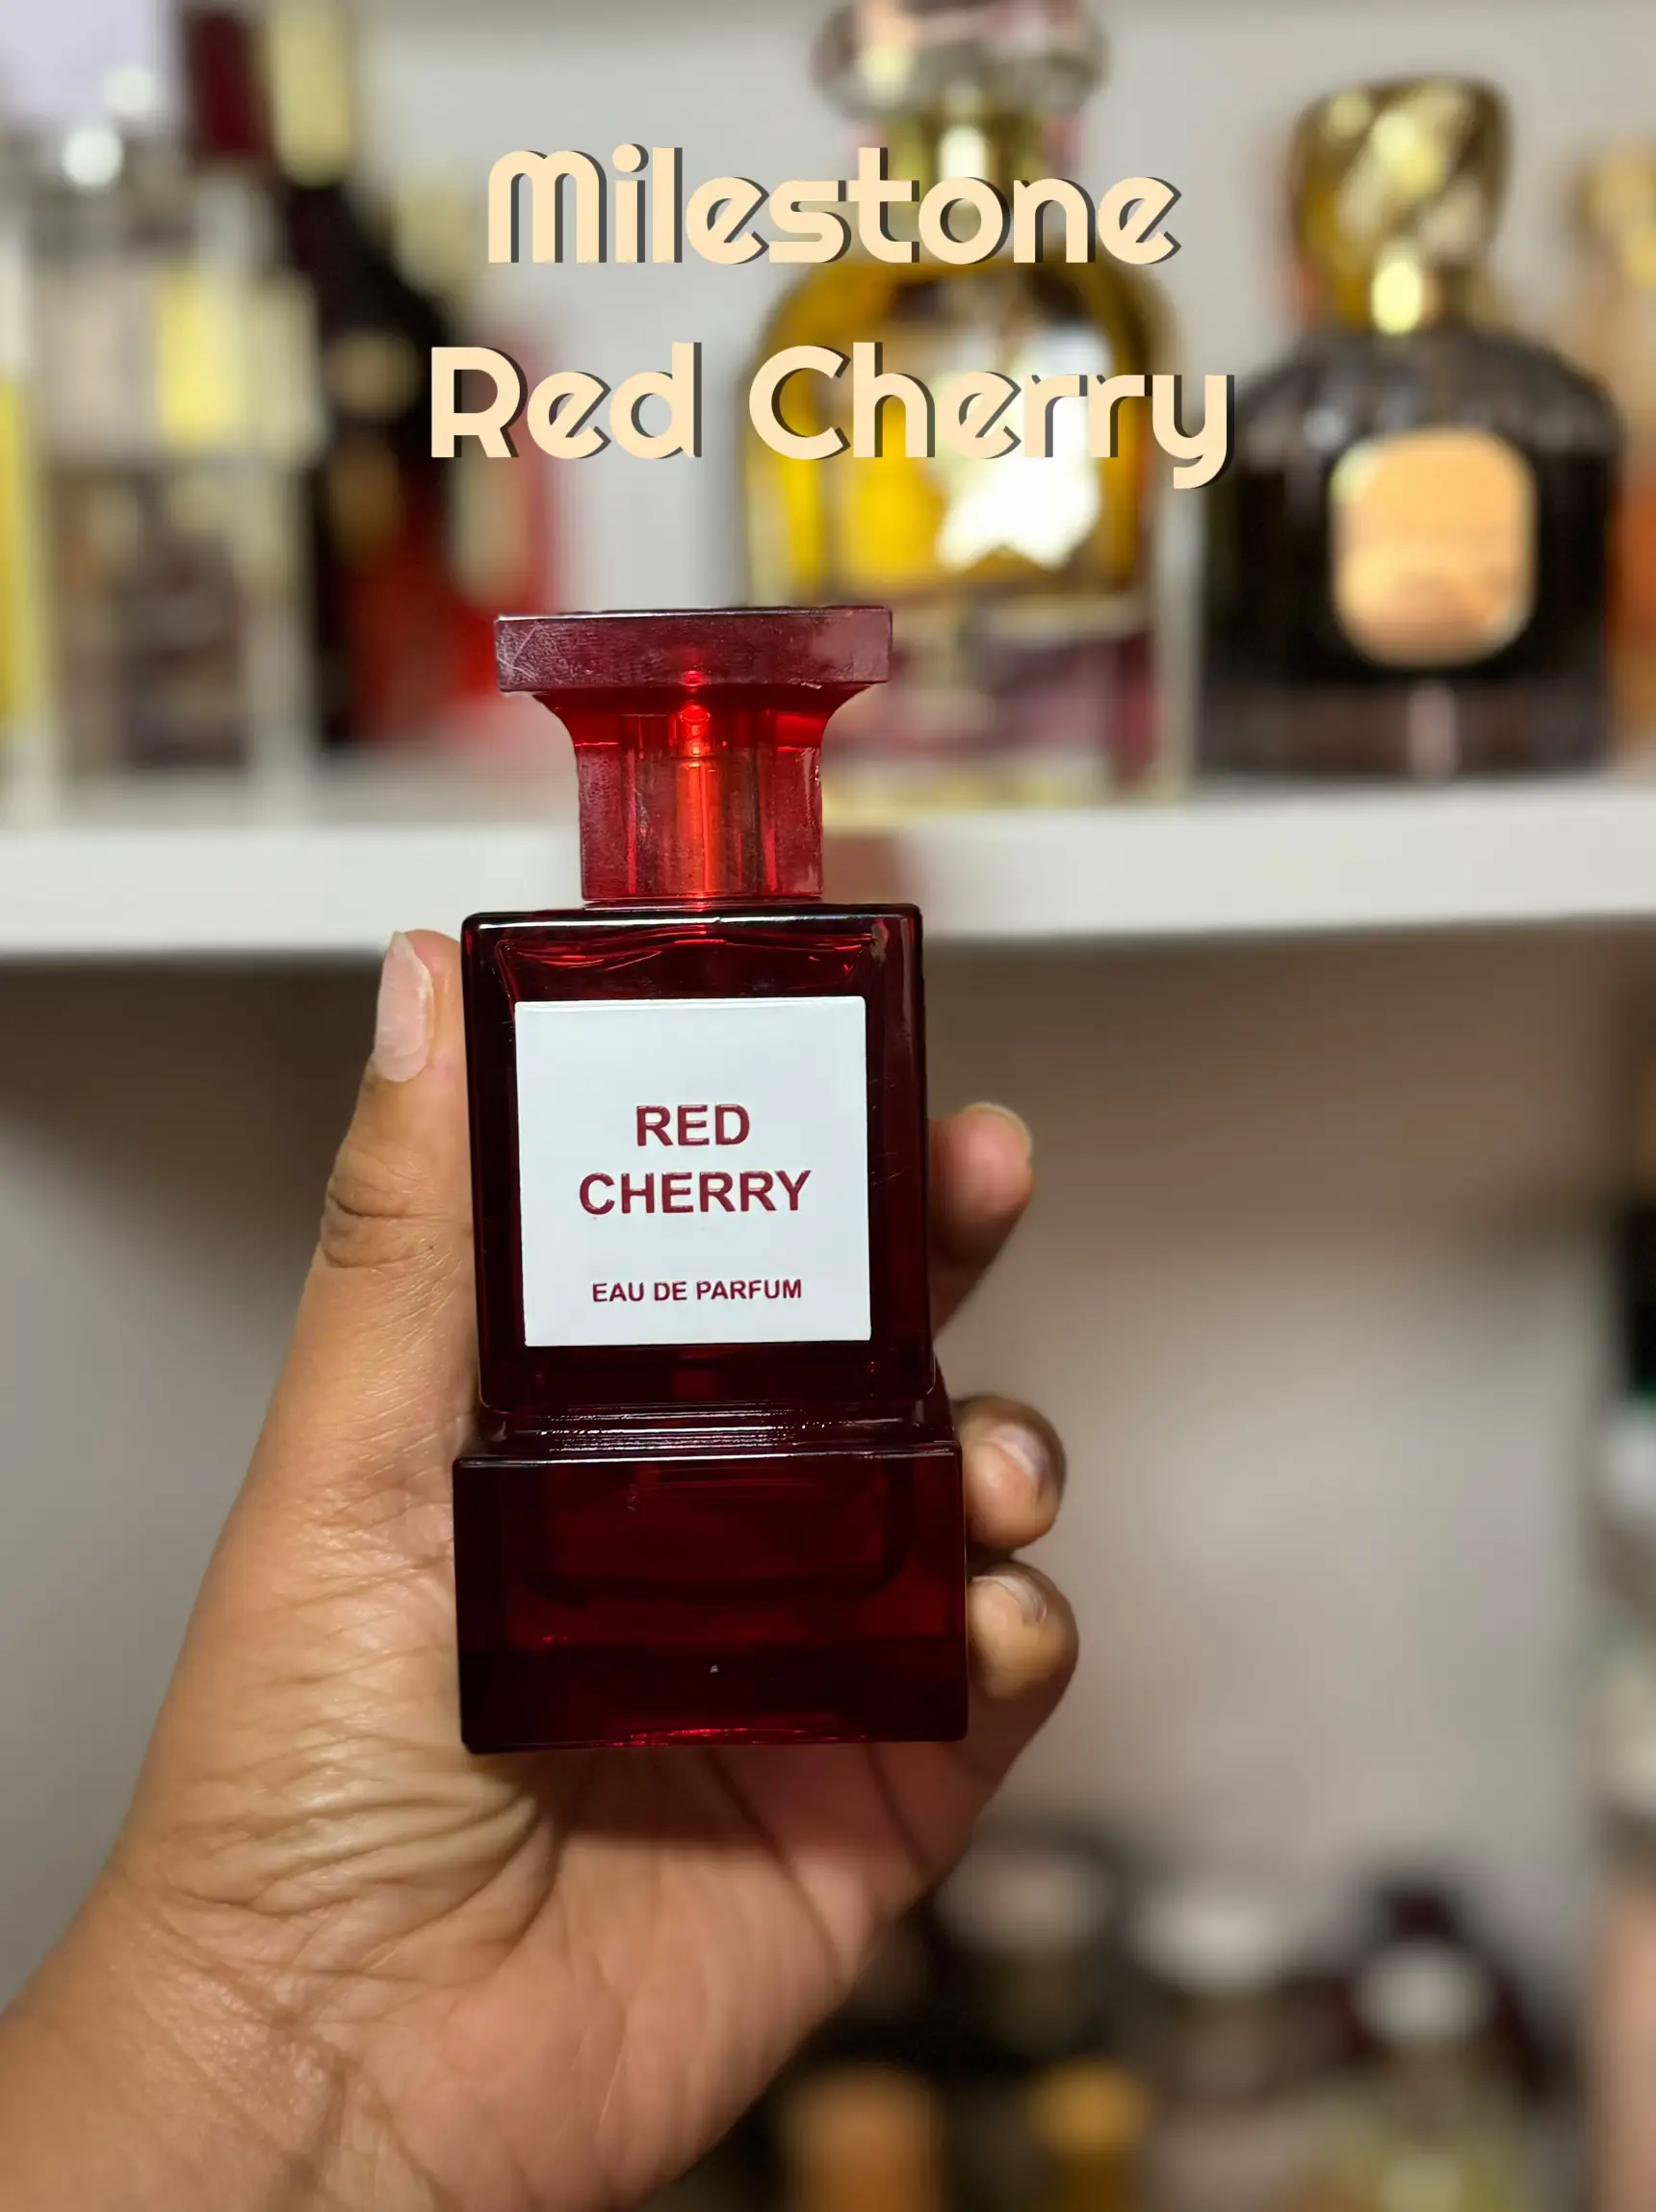 Latte di Cherry Extrait de Parfum von New Notes - online bestellen